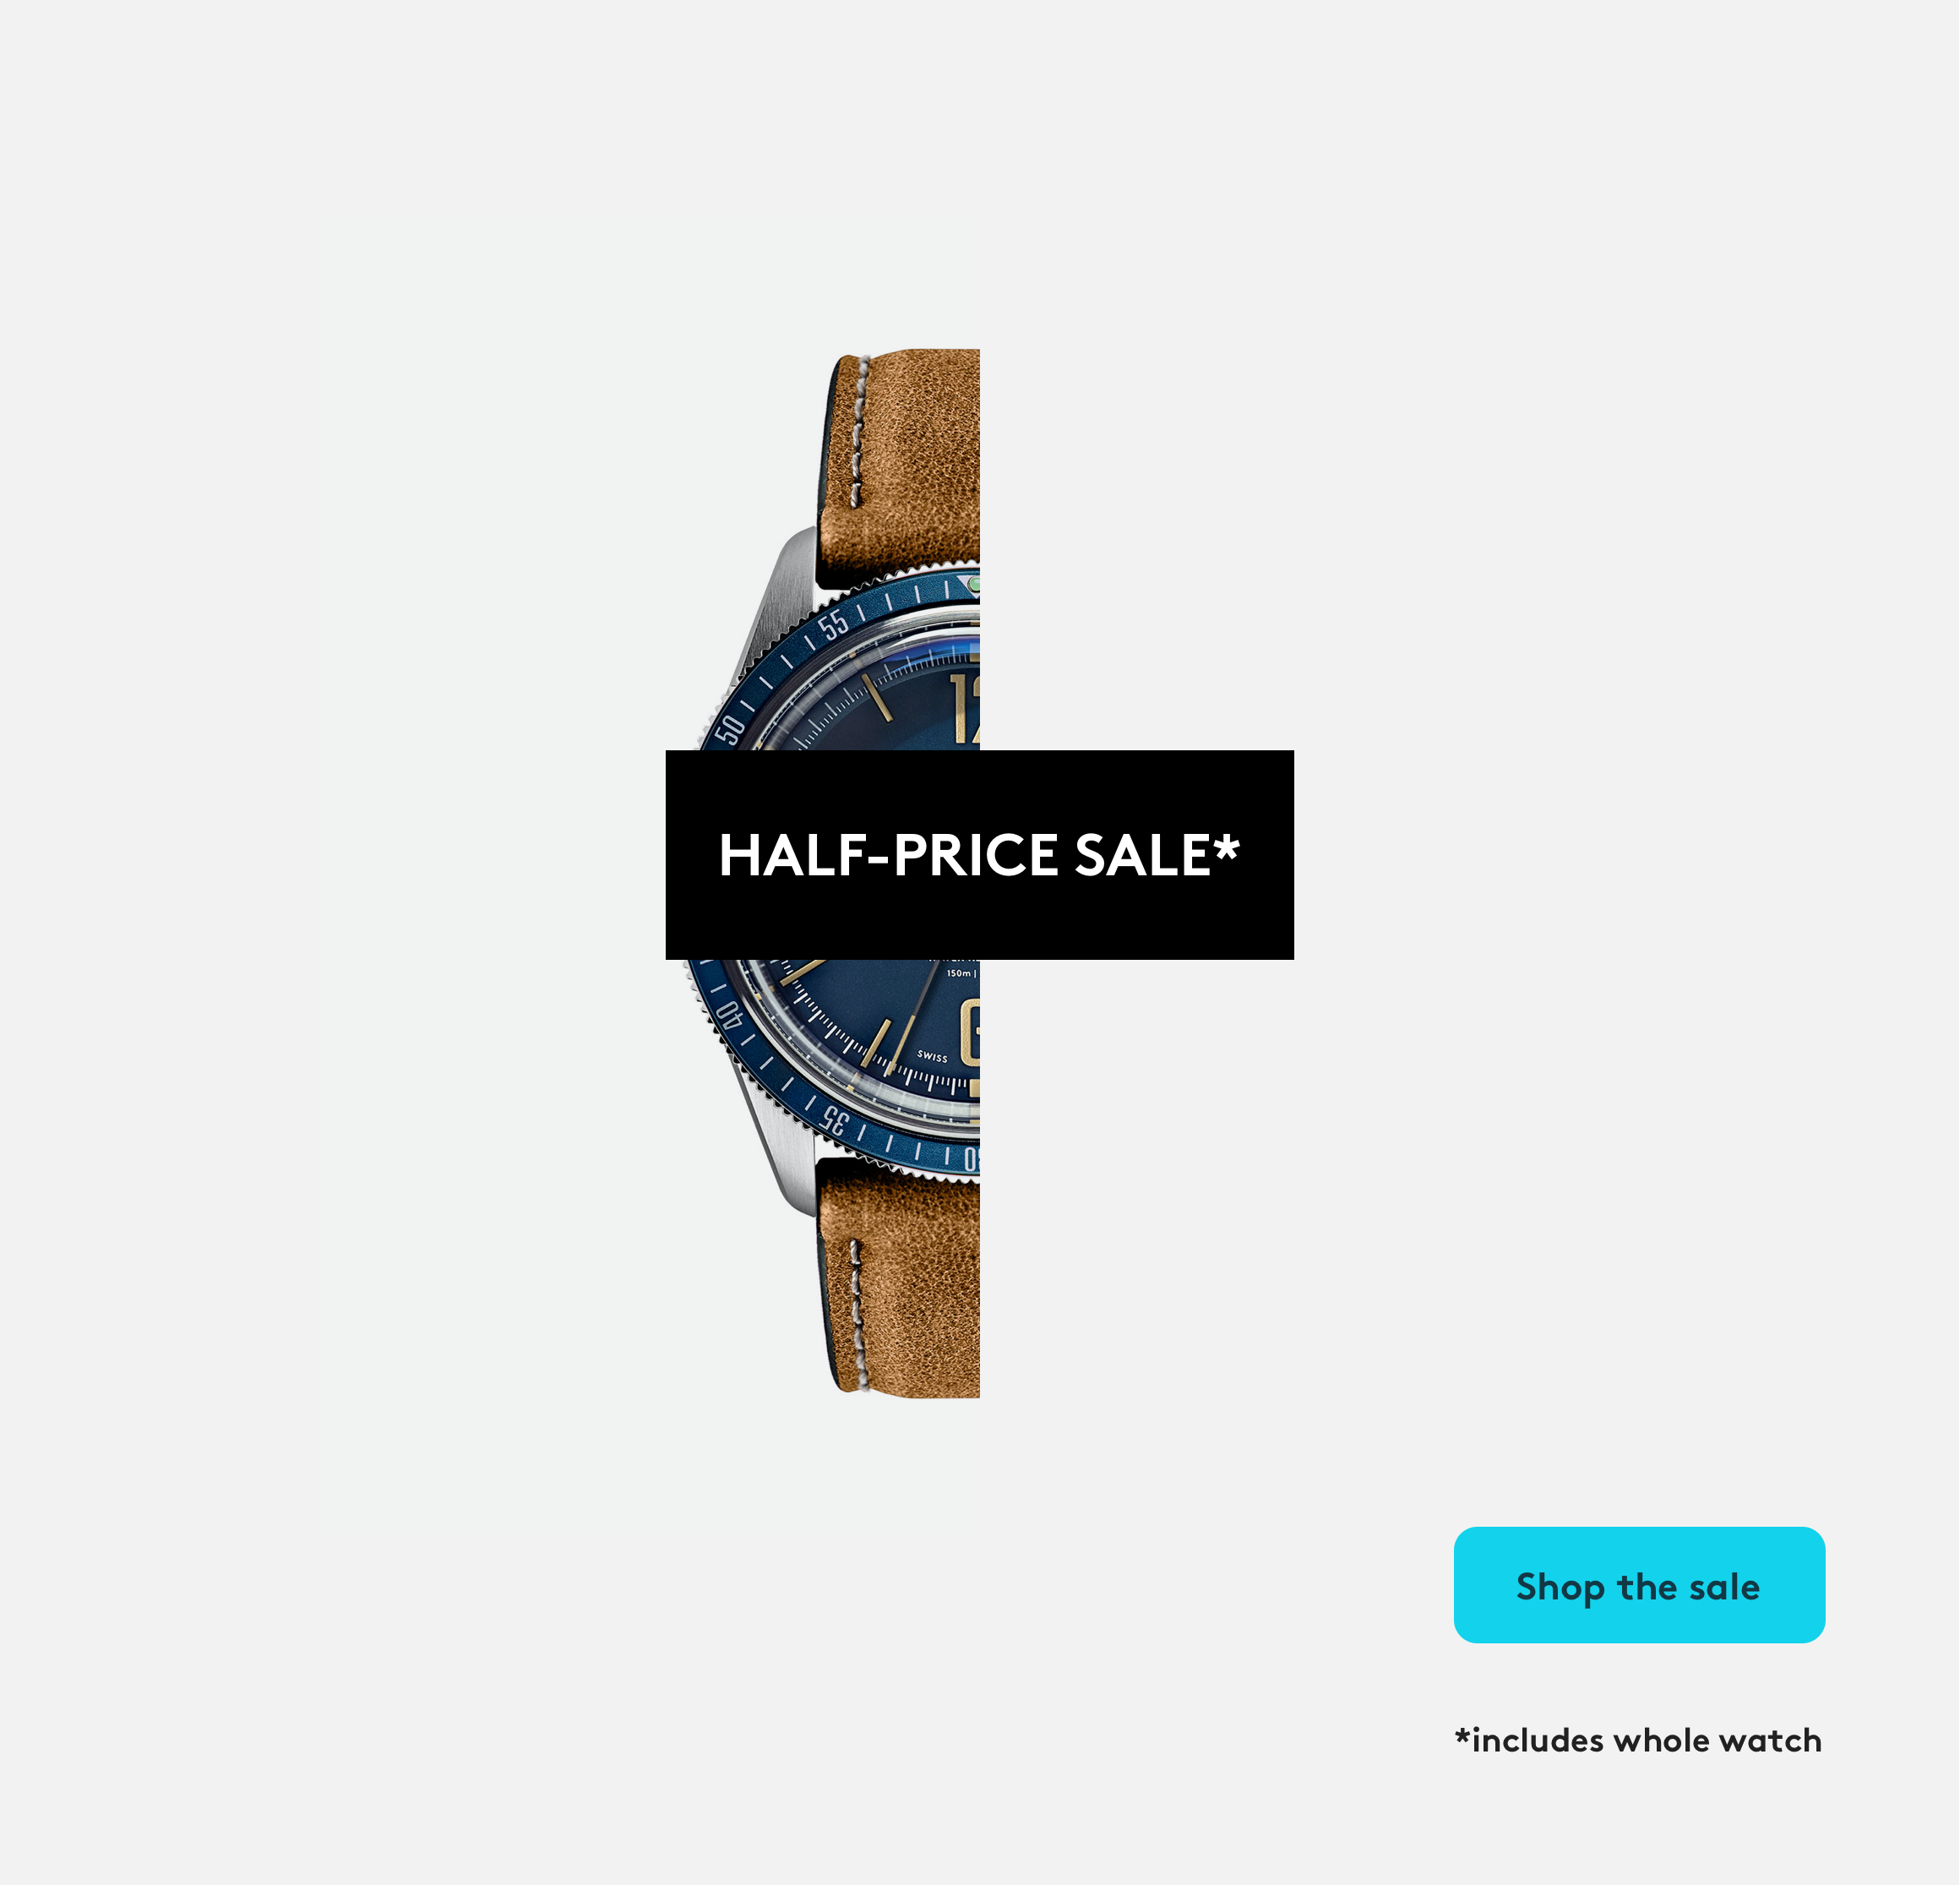 The half-price sale